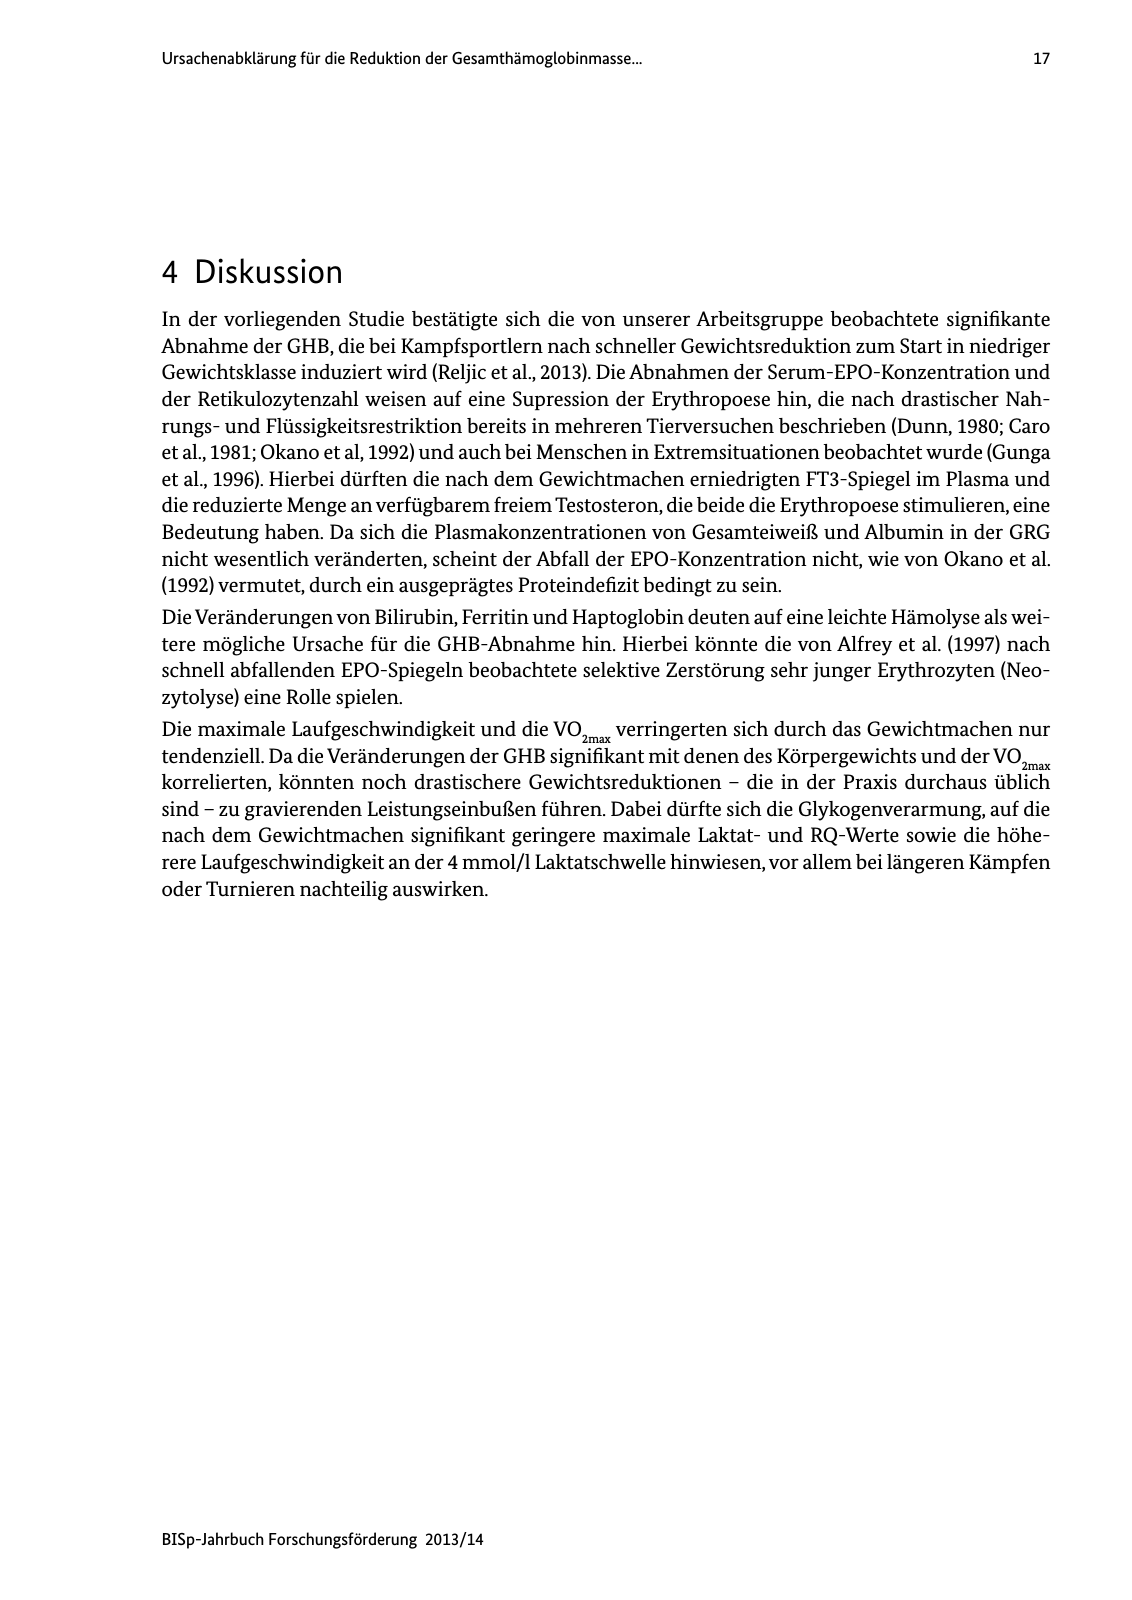 Vorschau BISp-Jahrbuch Forschungsförderung 2013/14 Seite 18